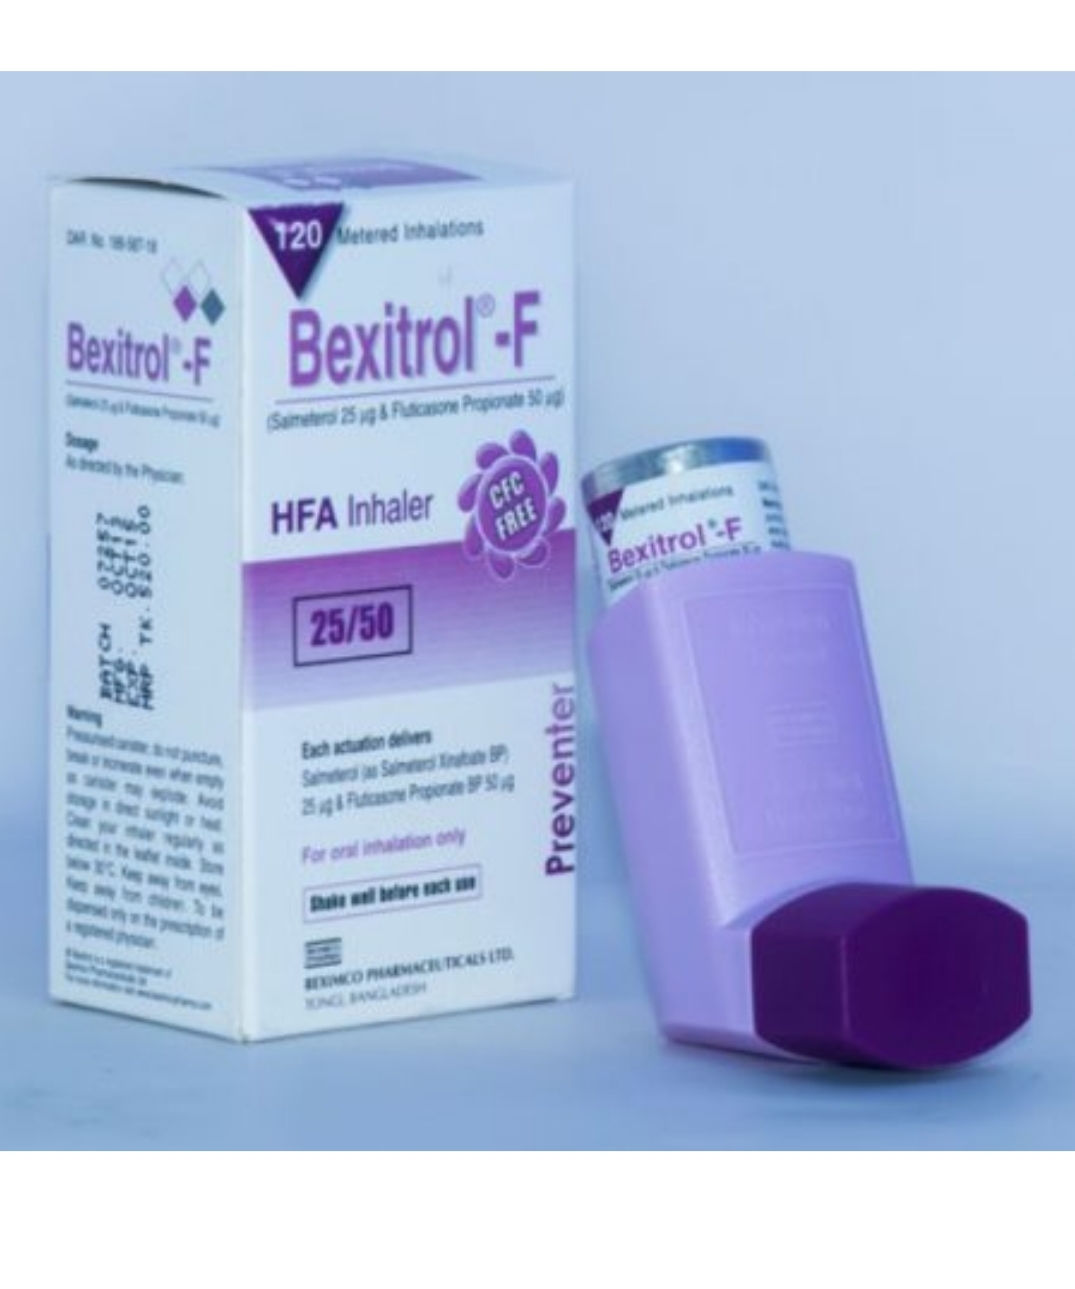 Bexitrol F HFA 25/50 Inhaler-120 metered doses